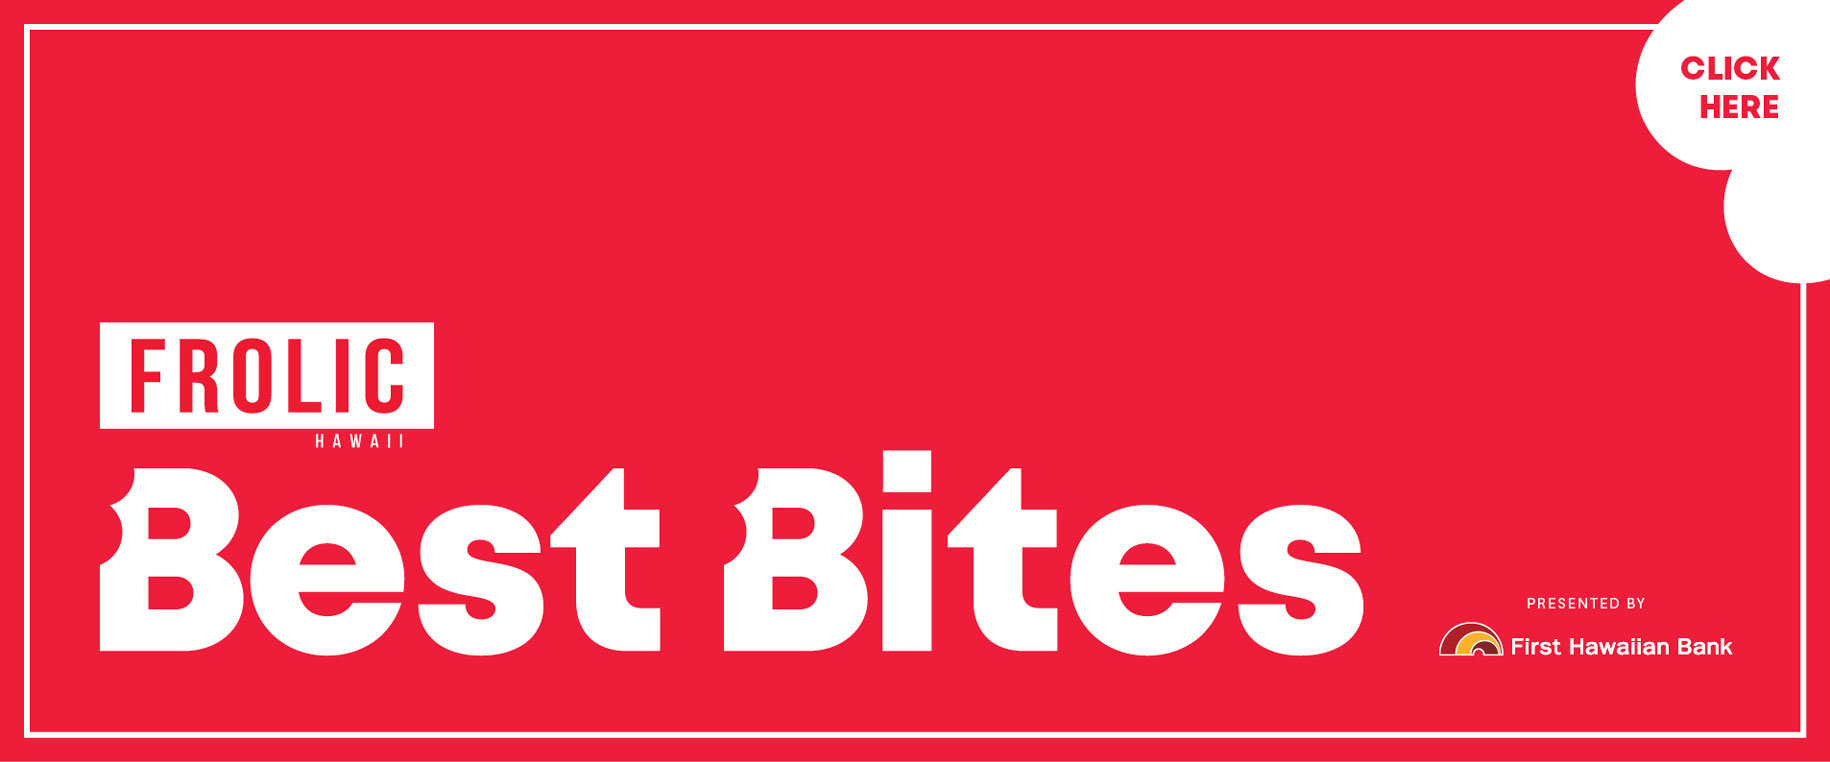 07 21 Best Bites Banner Ad 915x381px2x